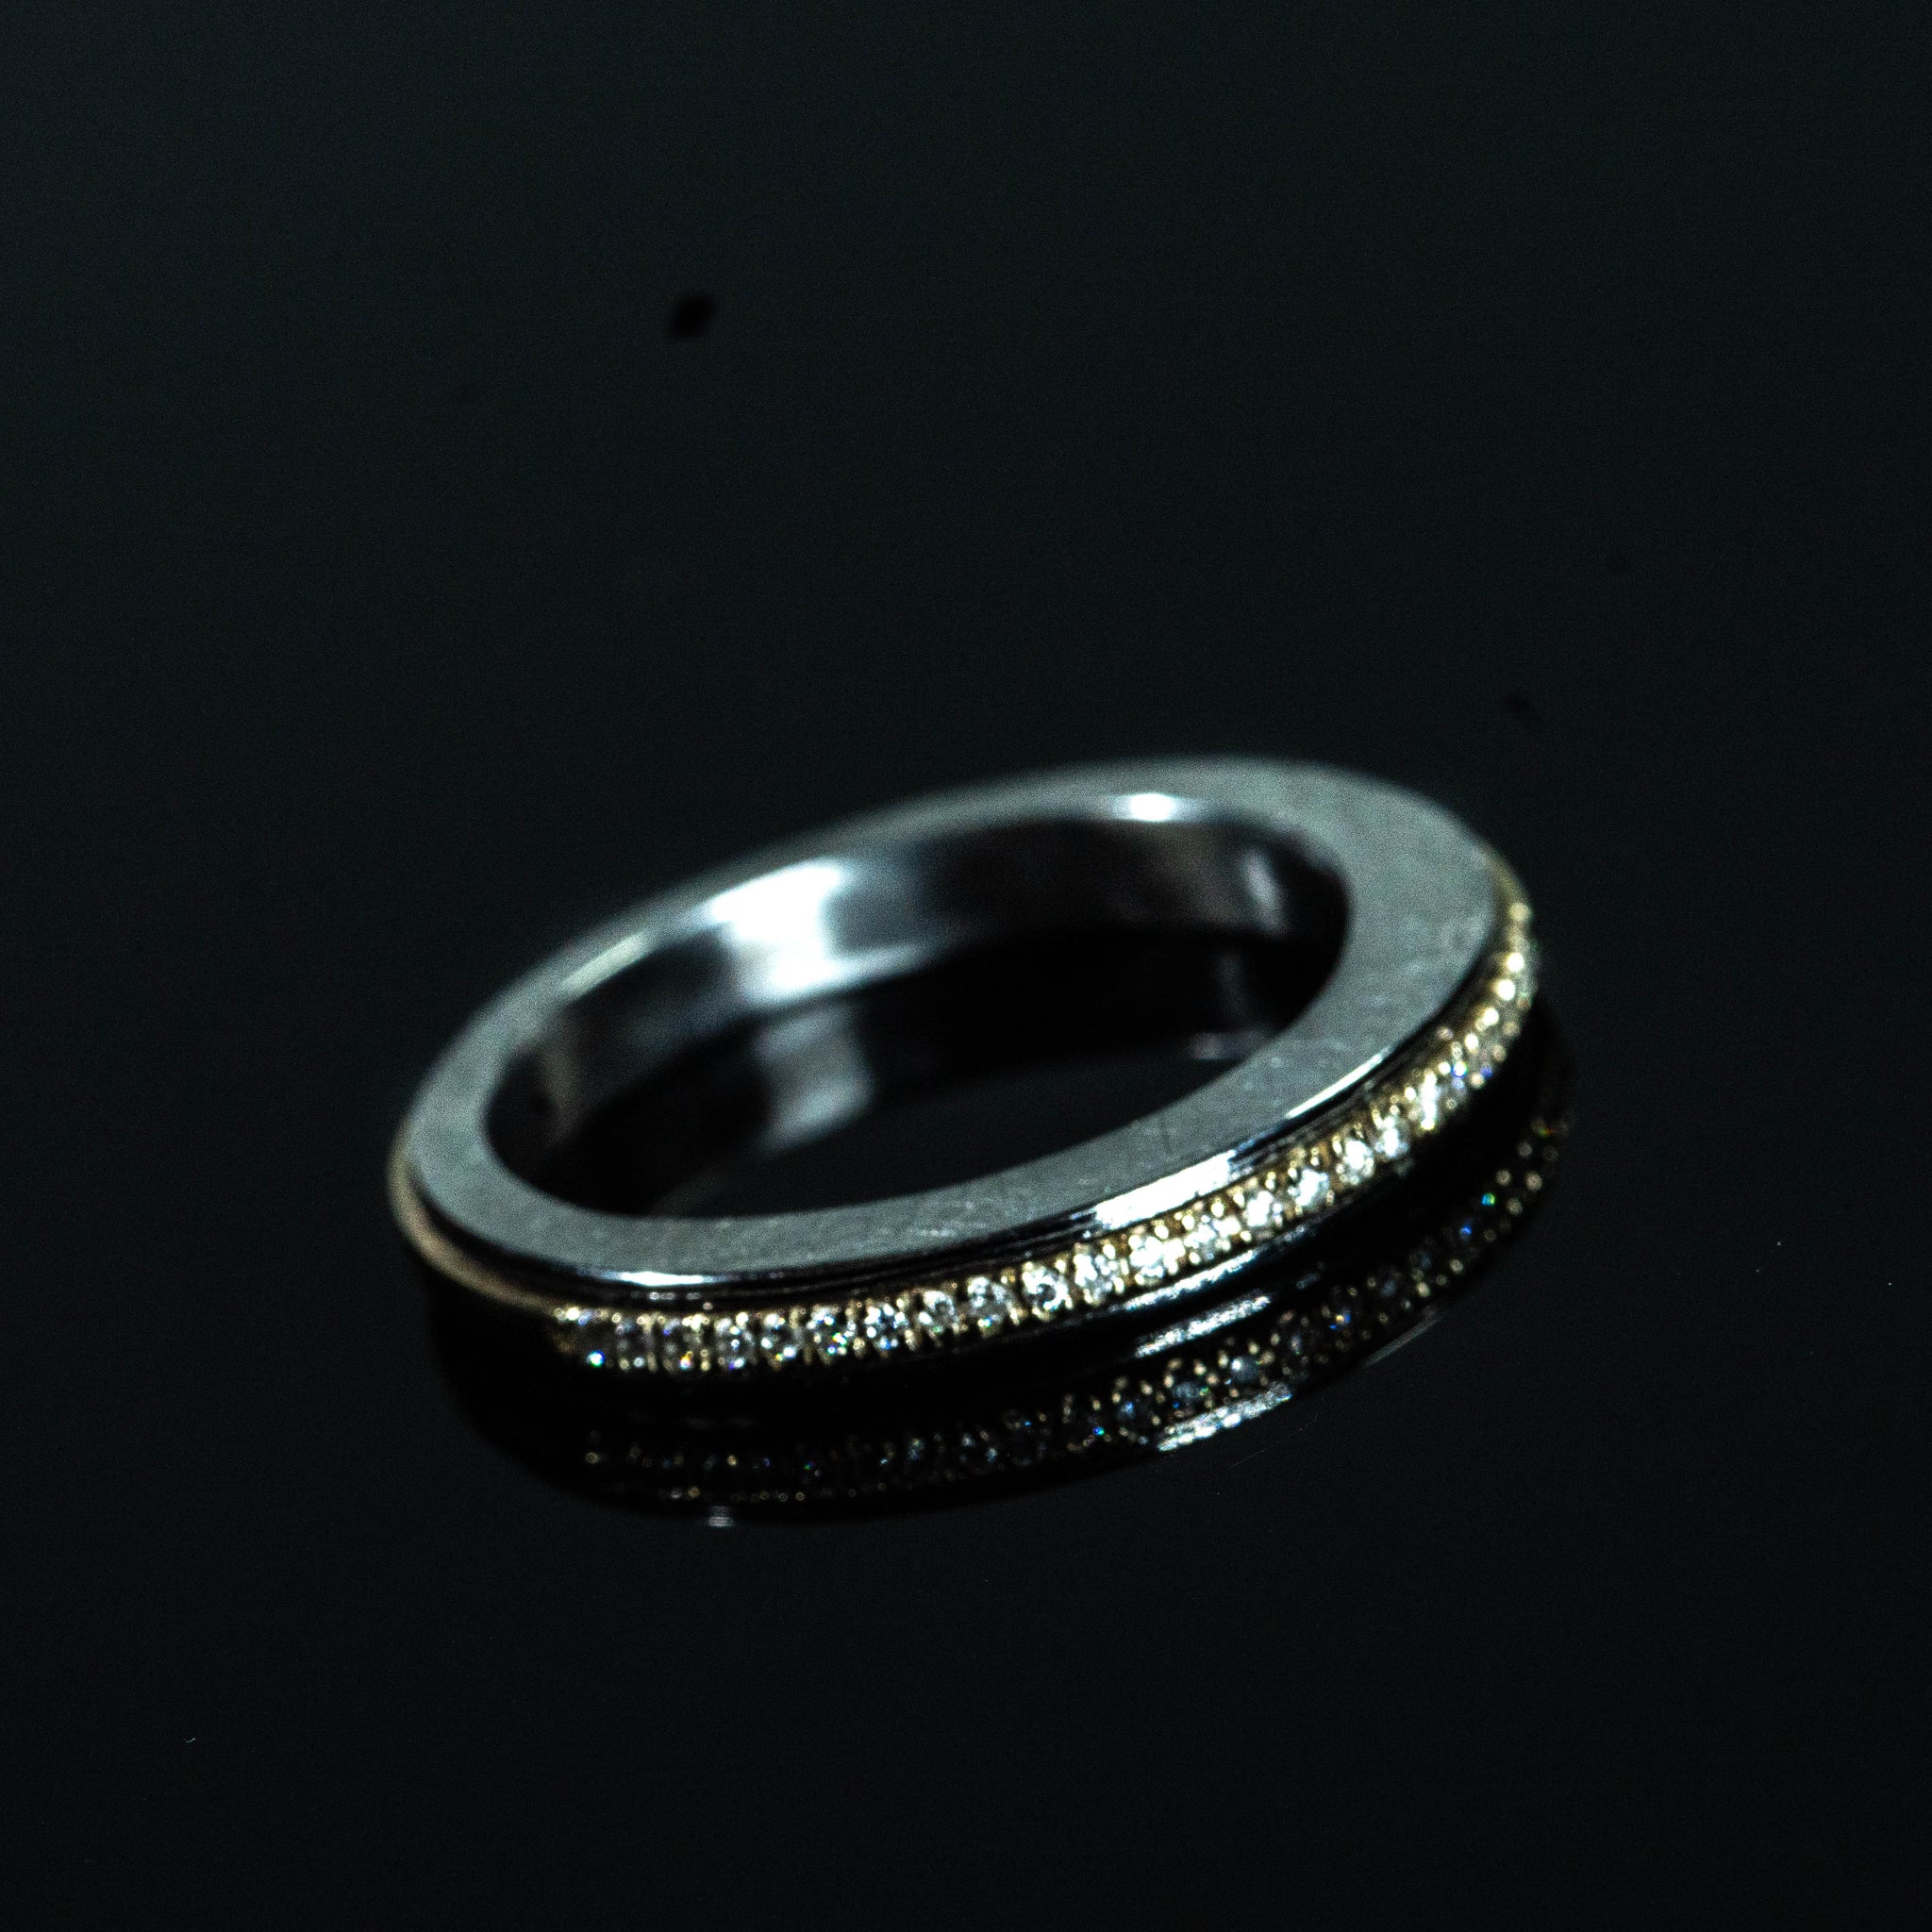 Stainless Steel - 18K 24 Diamonds Spinner Ring